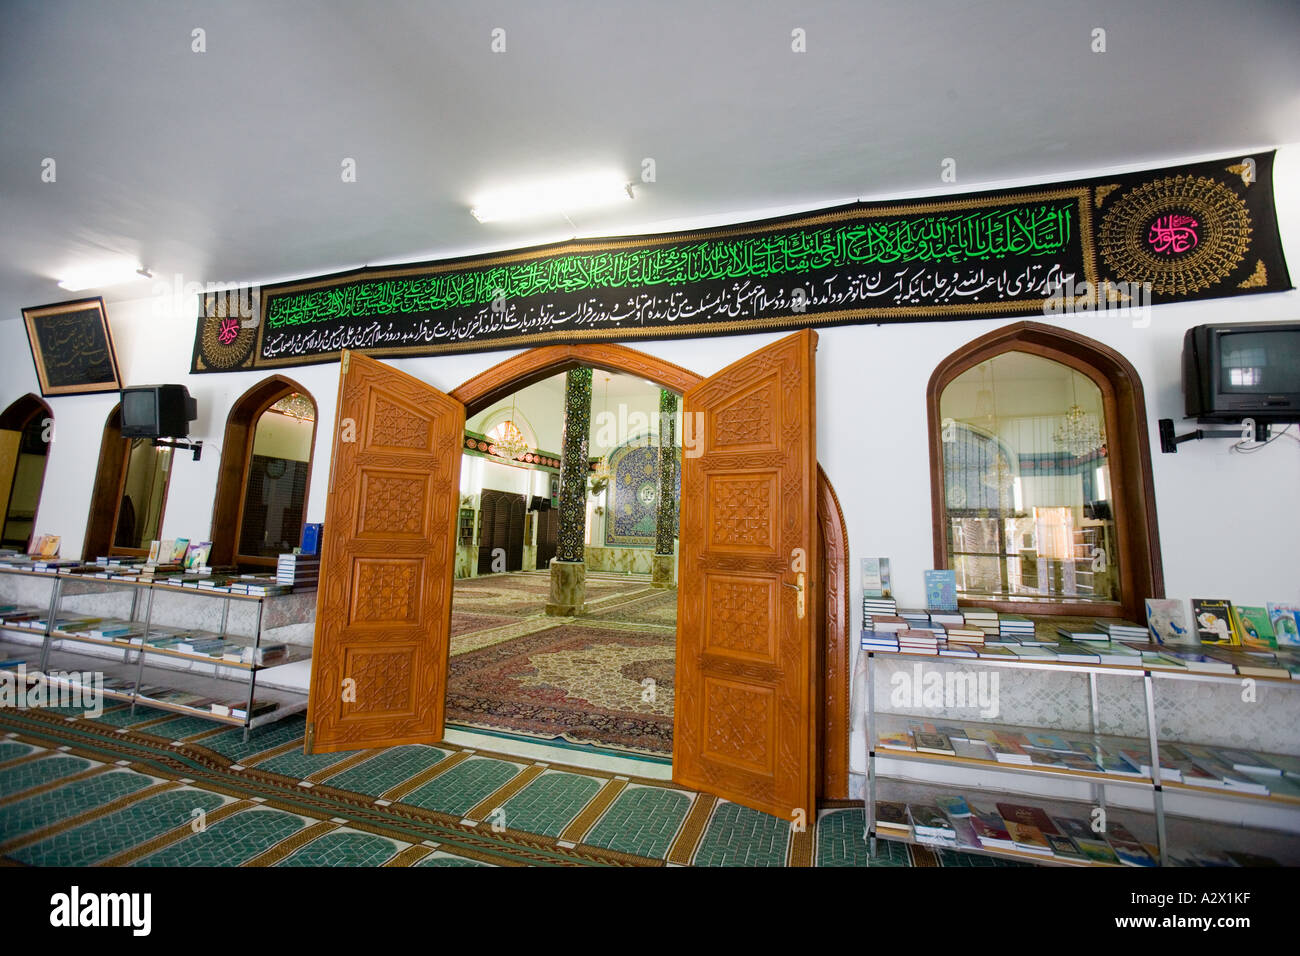 Une antichambre à la mosquée iranienne Al Wasl Road,, DUBAÏ, ÉMIRATS ARABES UNIS Banque D'Images